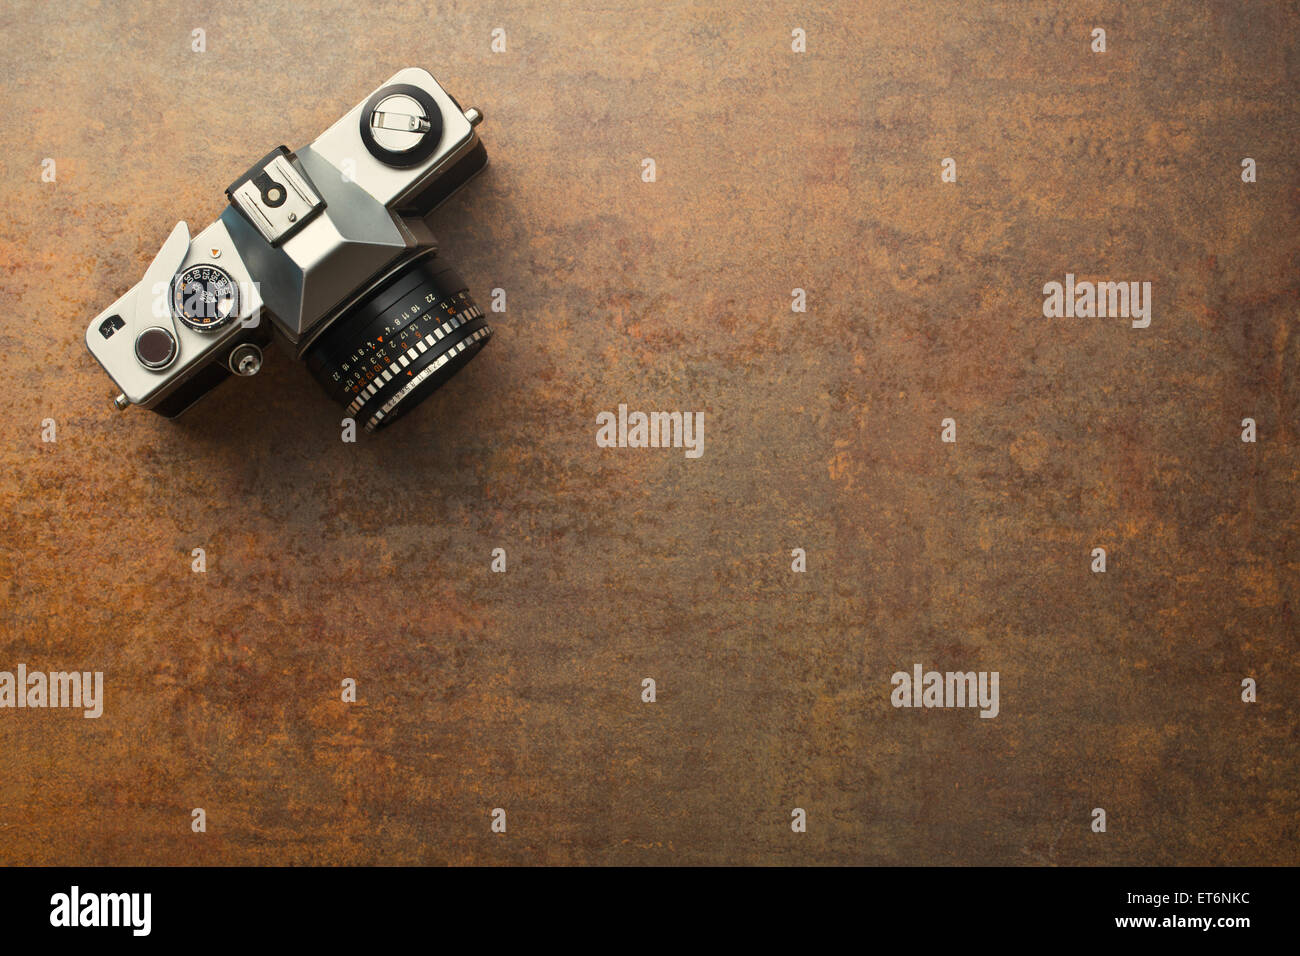 Vecchia telecamera analogica su sfondo arrugginito Foto Stock